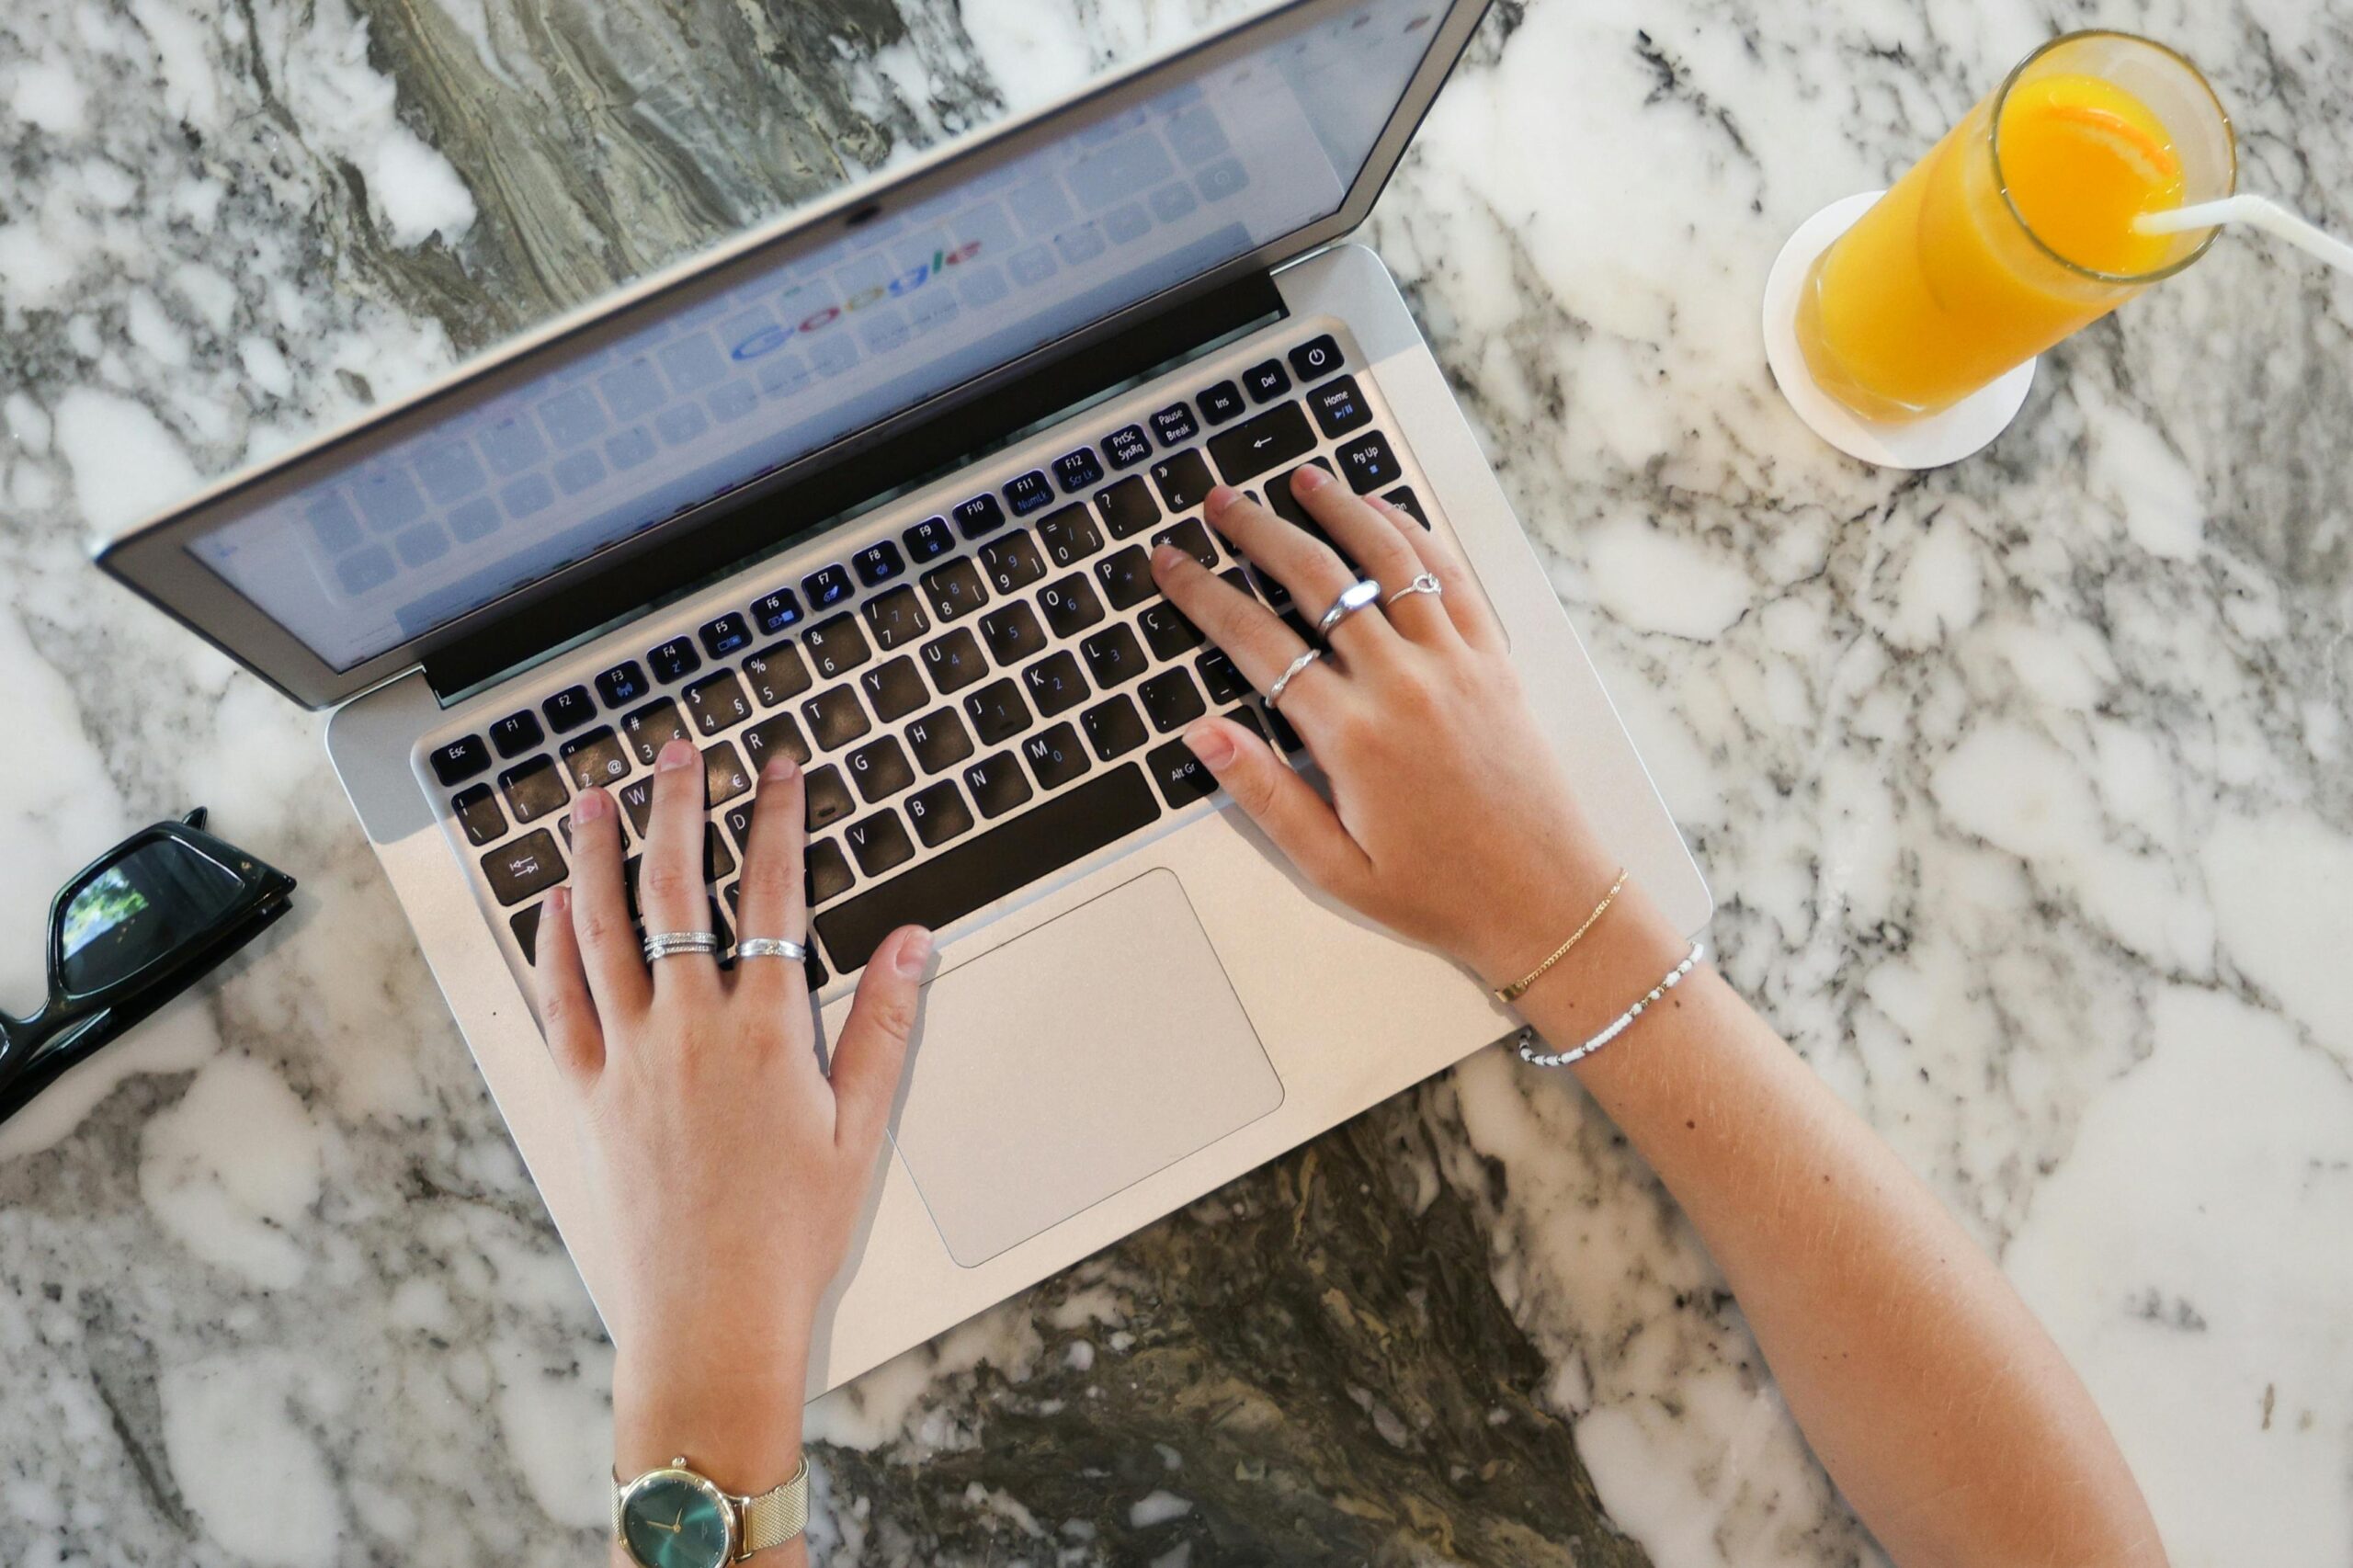 Ova slika prikazuje osobu koja tipka na laptopu. Laptop je postavljen na mramorni stol, a pored njega se nalazi čaša soka od naranče sa slamkom. Osoba nosi sat i nekoliko prstena.